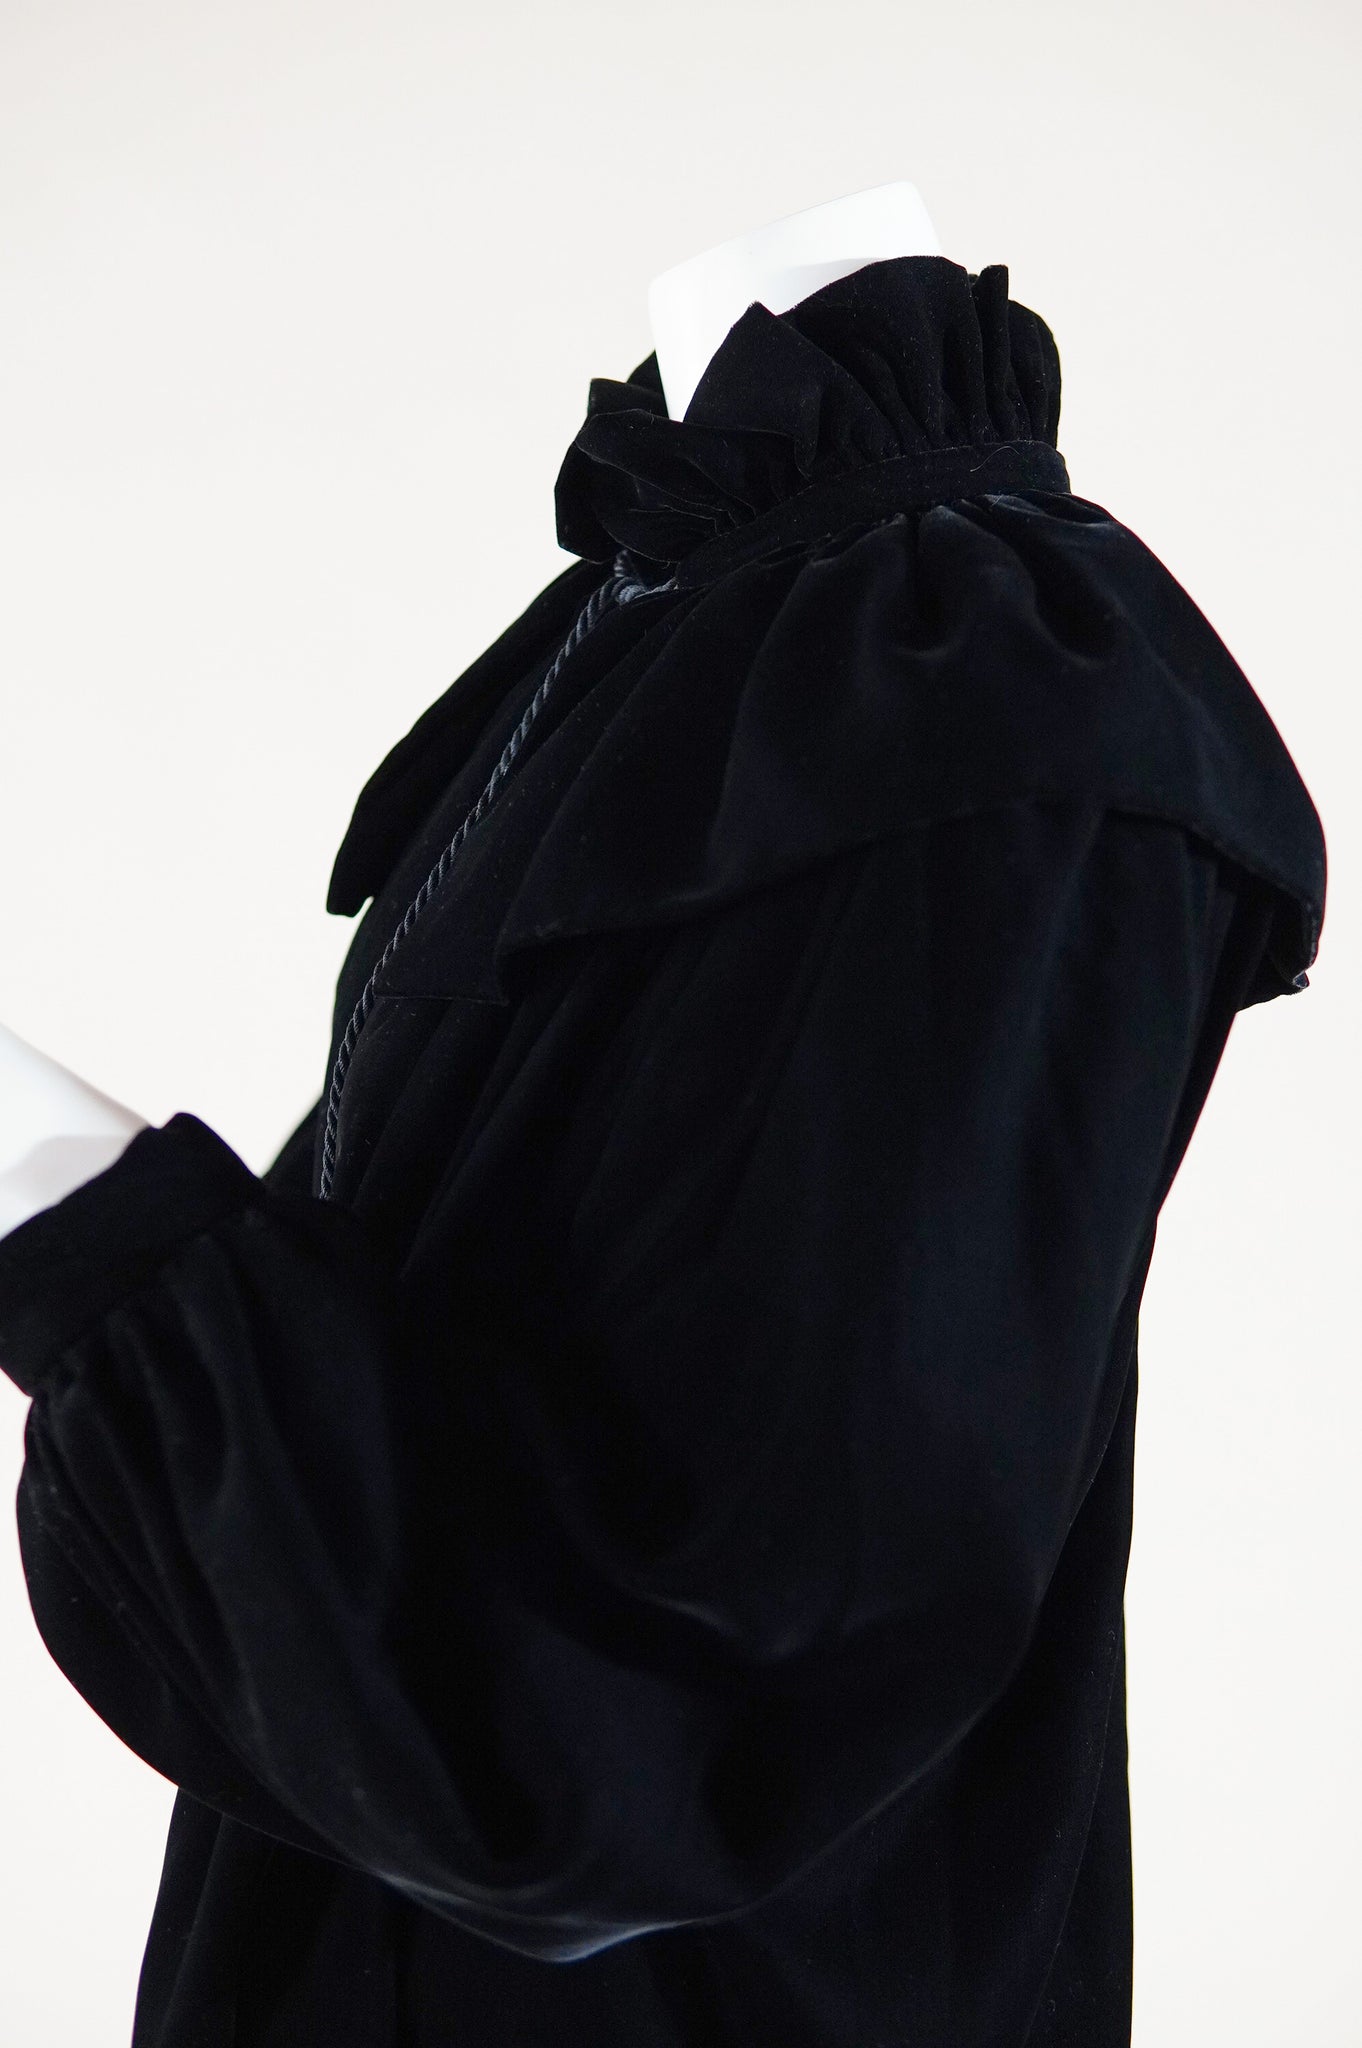 RESERVED S/S 1977 documented Yves Saint Laurent Rive Gauche velvet jacket - XS/S